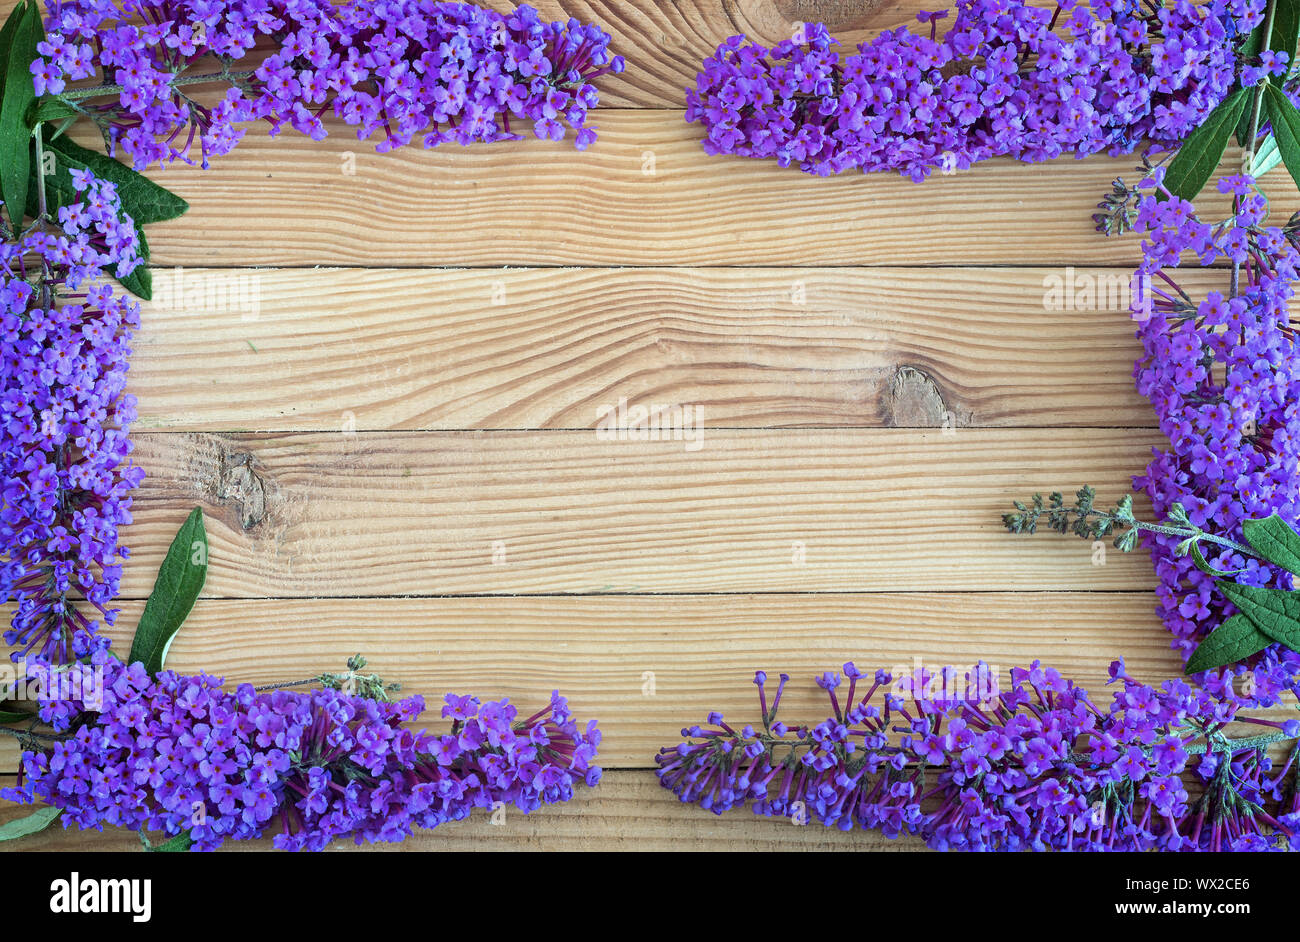 Beautiful buddleia shrub flowers on wooden background. Stock Photo